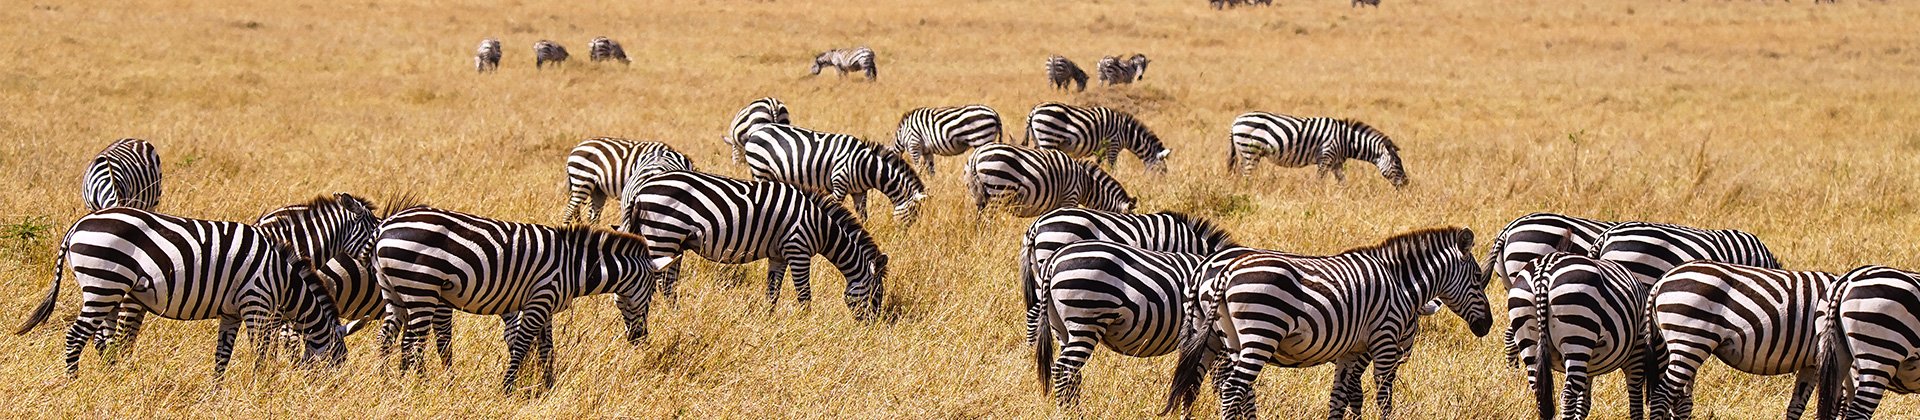 Safari, Zebras